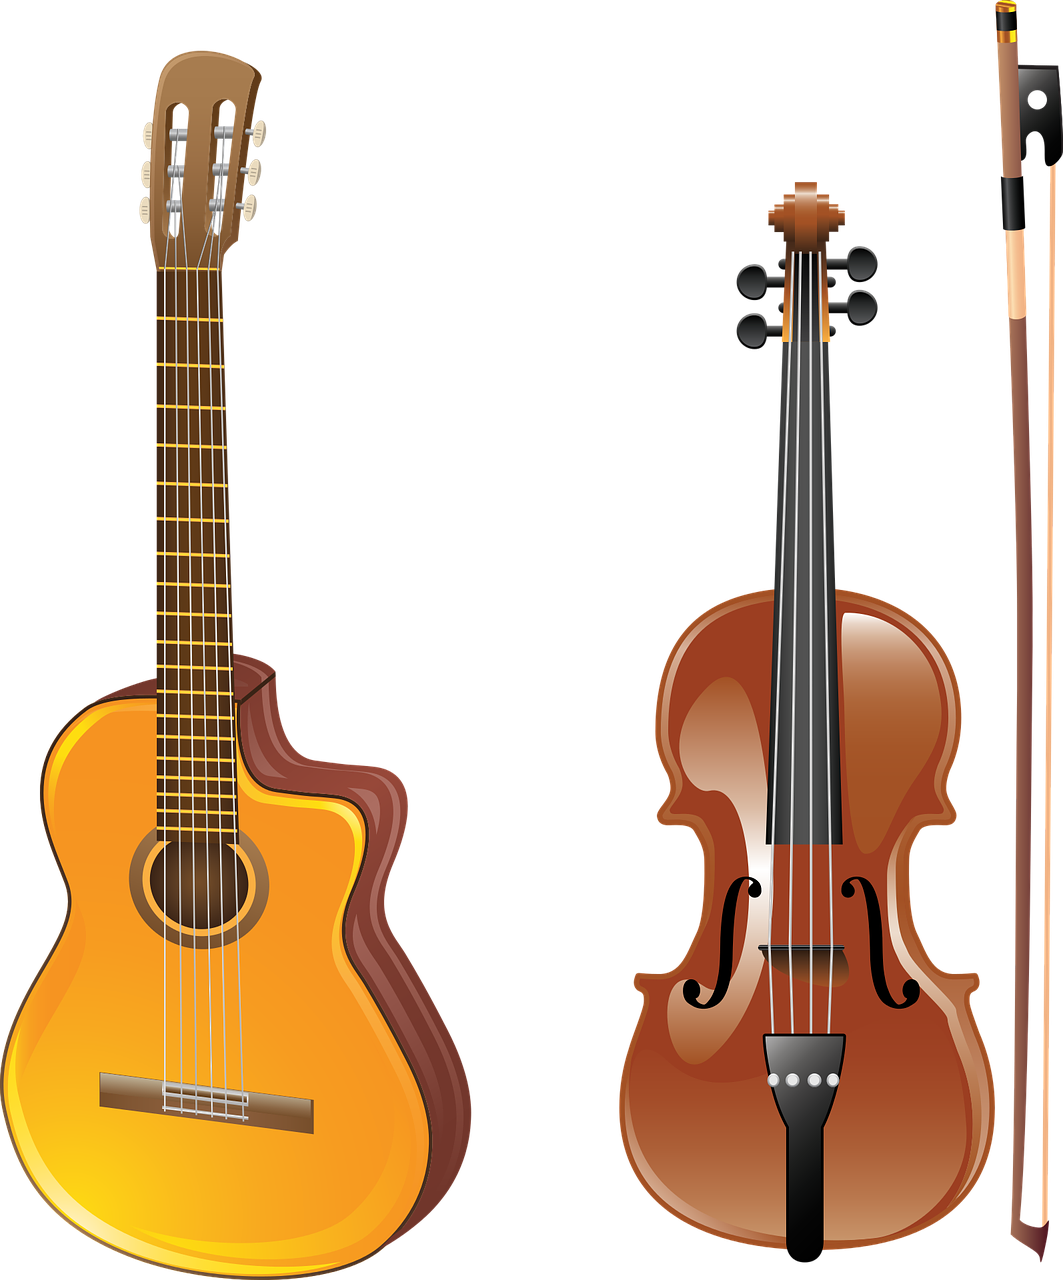 Gitara, Smuikas, Lankas, Muzikinis Instrumentas, Akustine Sistema, Styginiai Instrumentai, Muzika, Įrankis, Džiazas, Orkestras